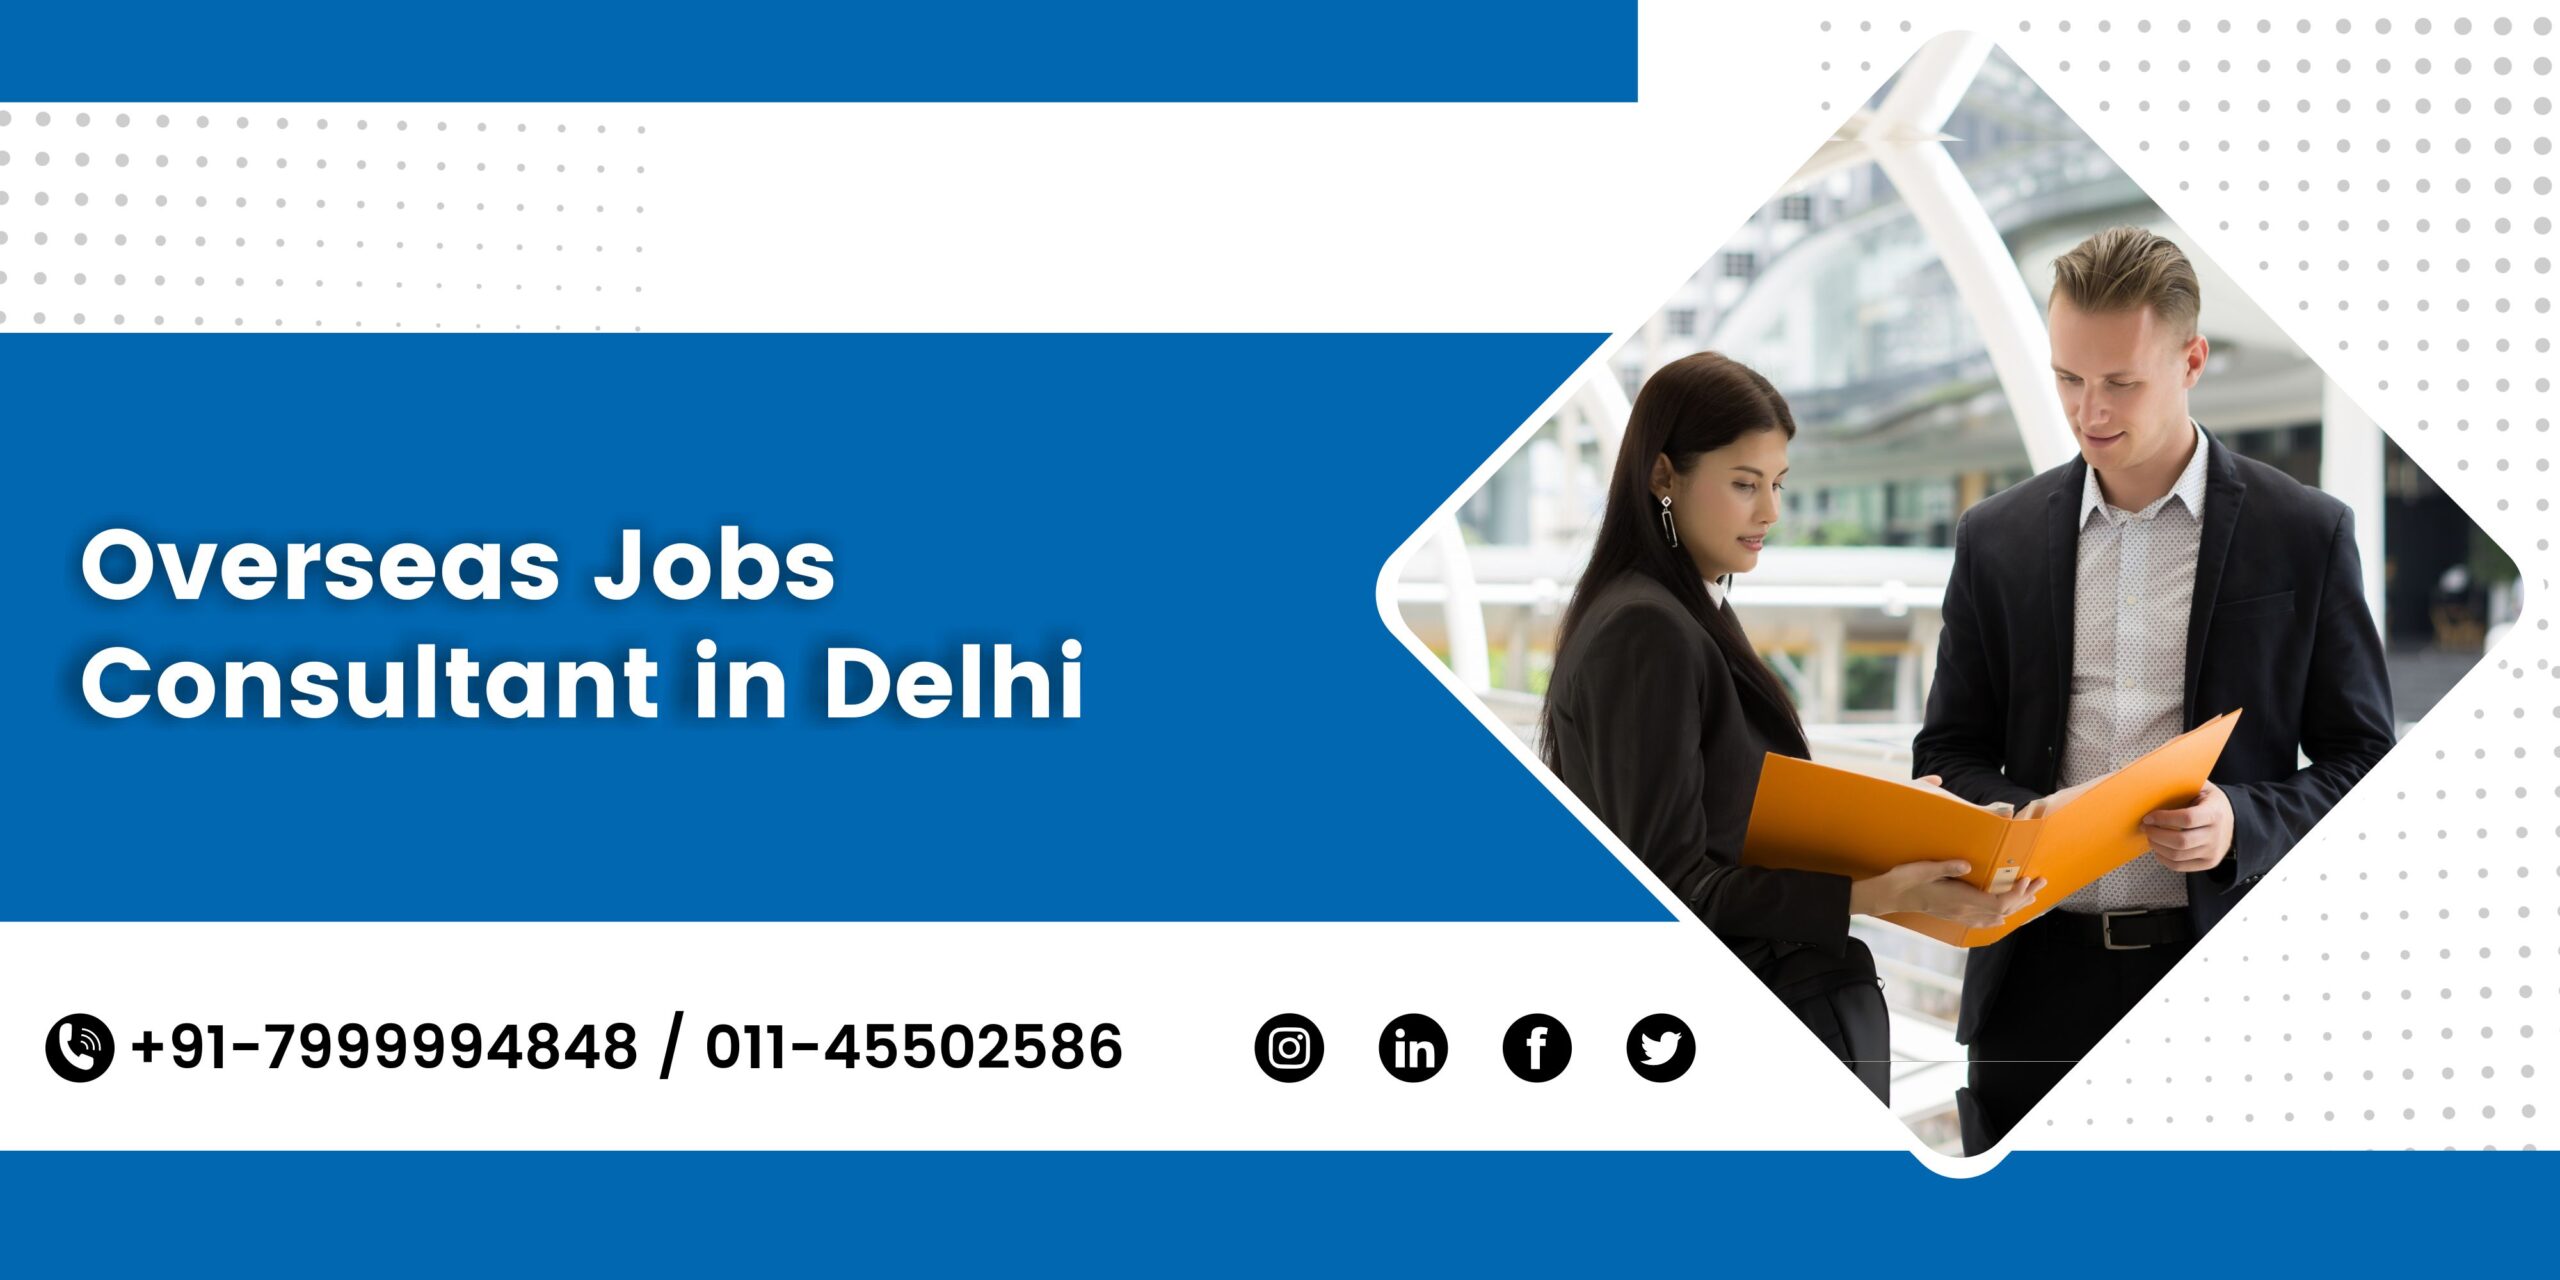 Overseas Jobs Consultant in Delhi